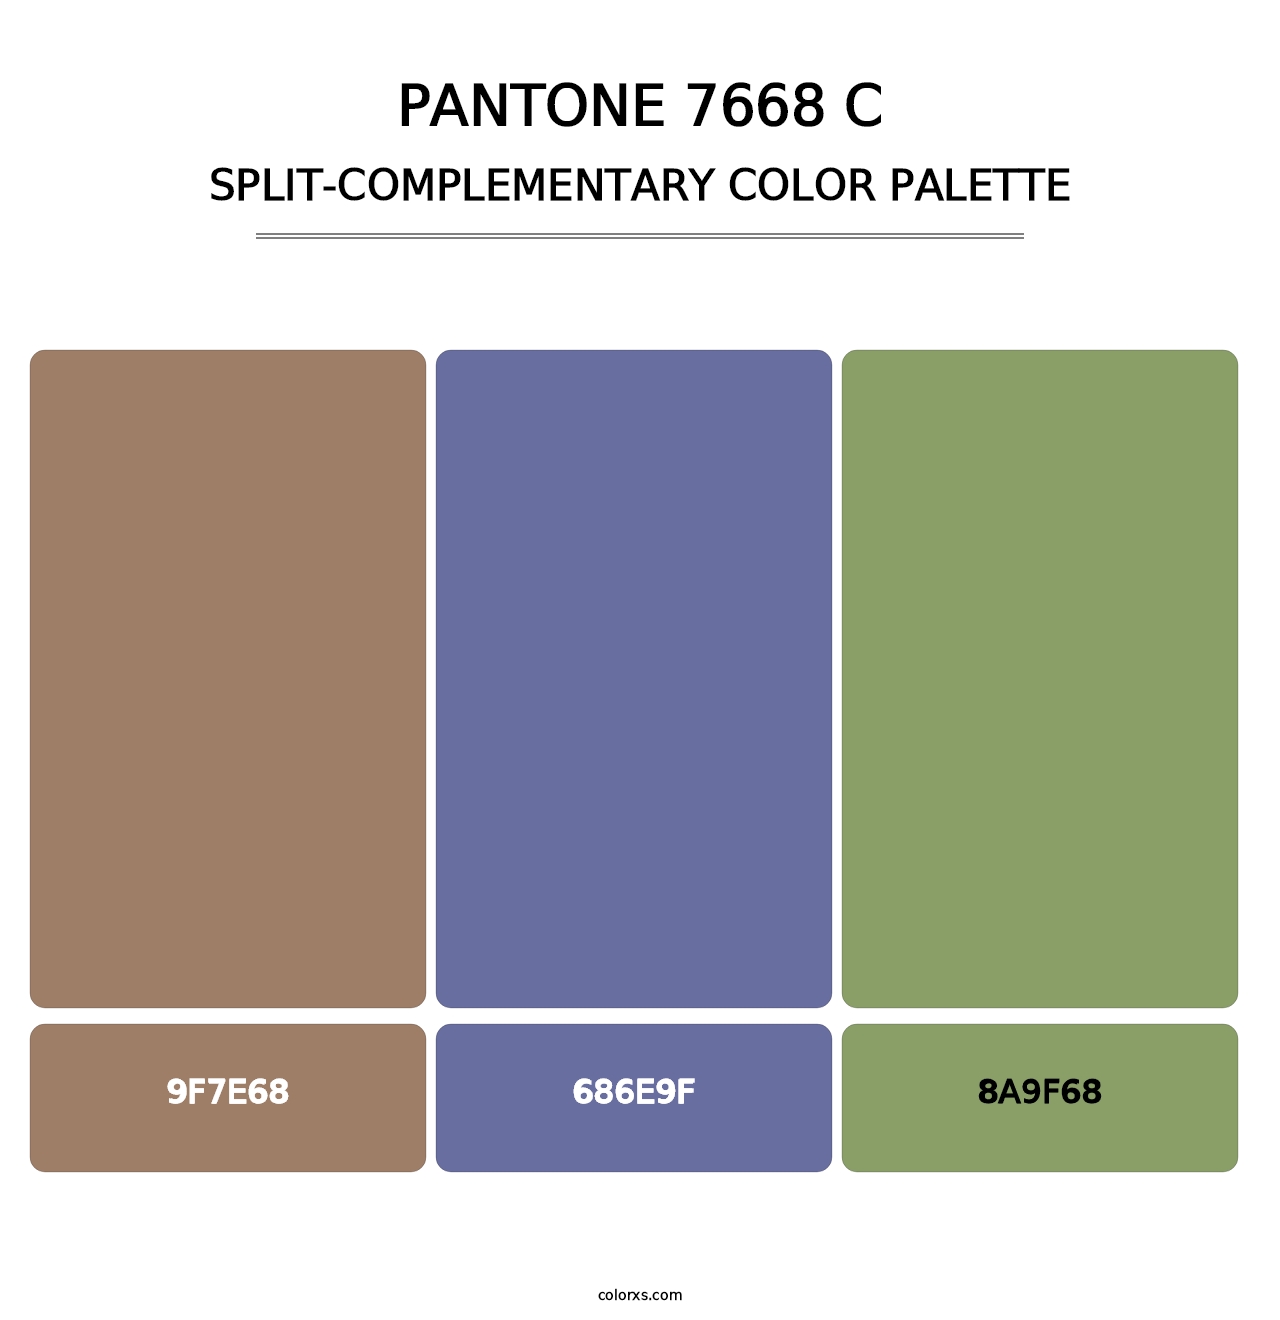 PANTONE 7668 C - Split-Complementary Color Palette